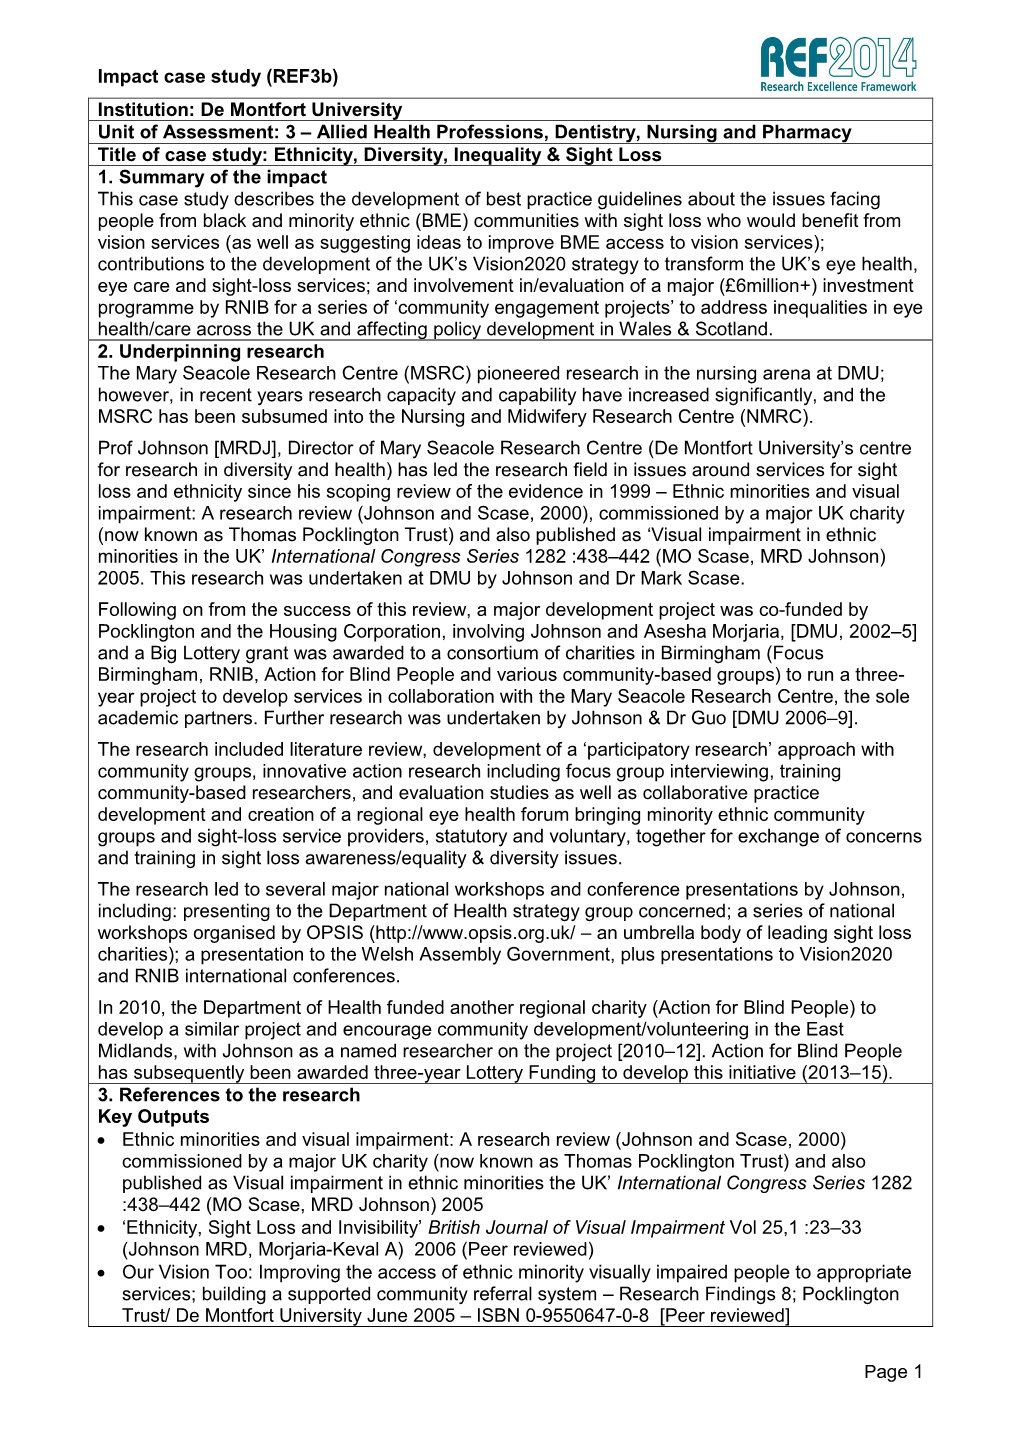 Page 1 Institution: De Montfort University Unit of Assessment: 3